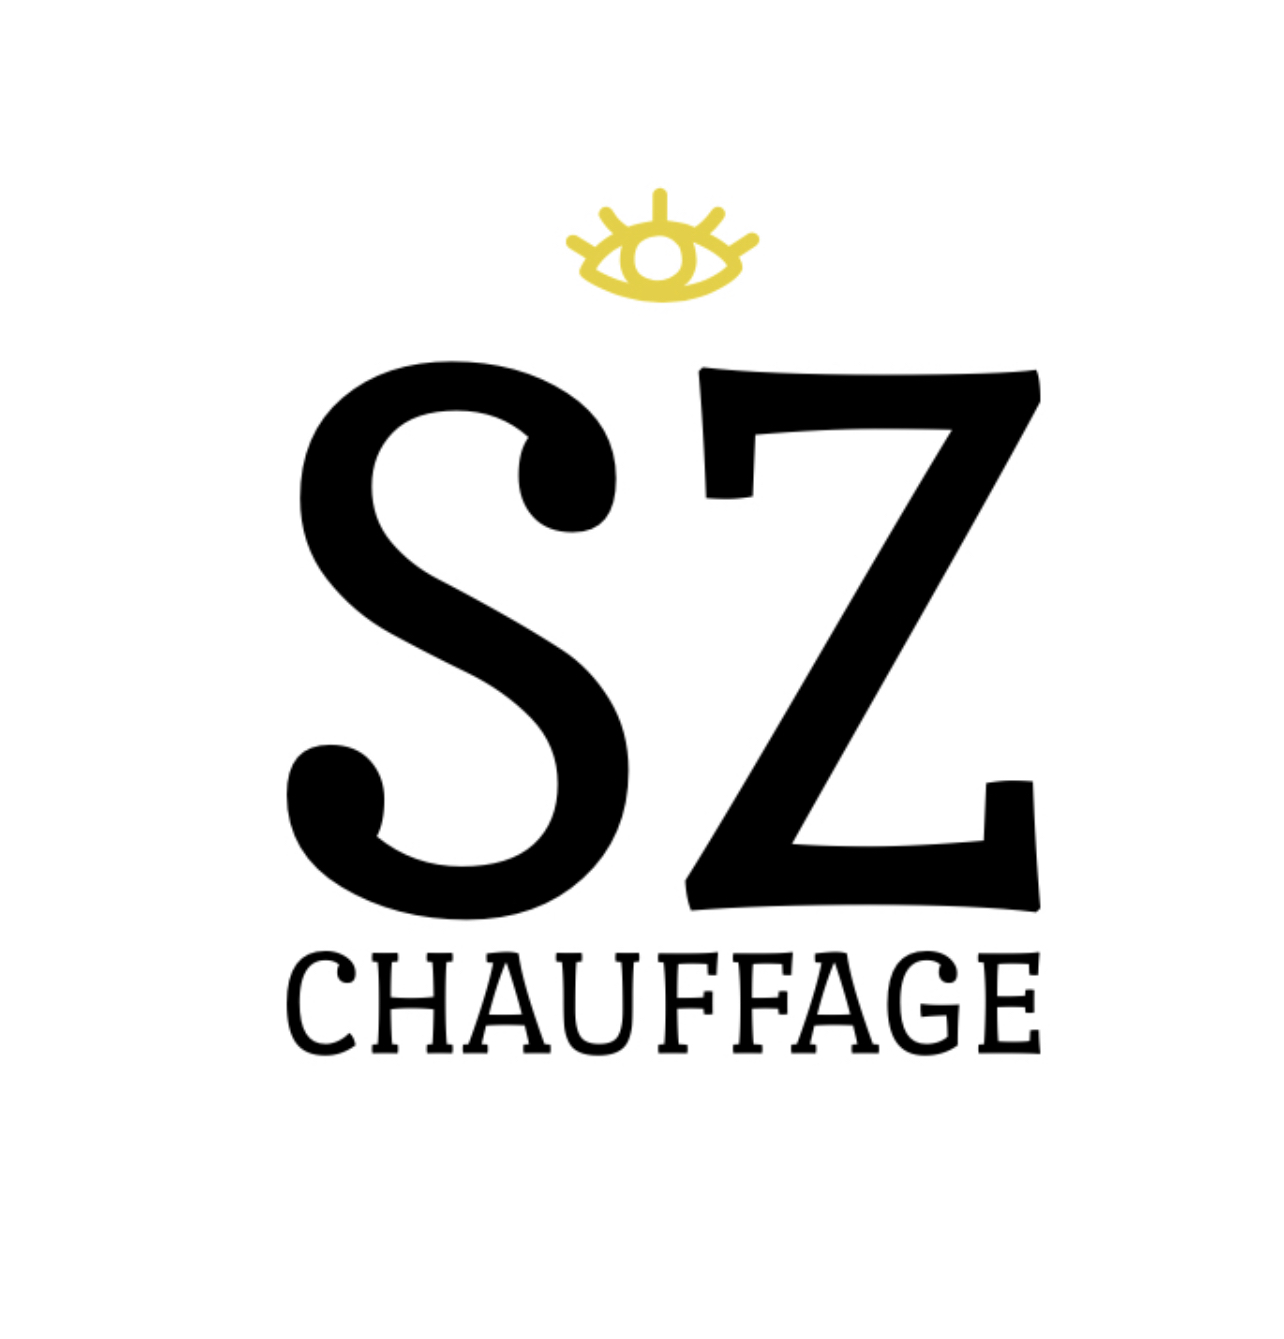 KZ-CHAUFFAGE